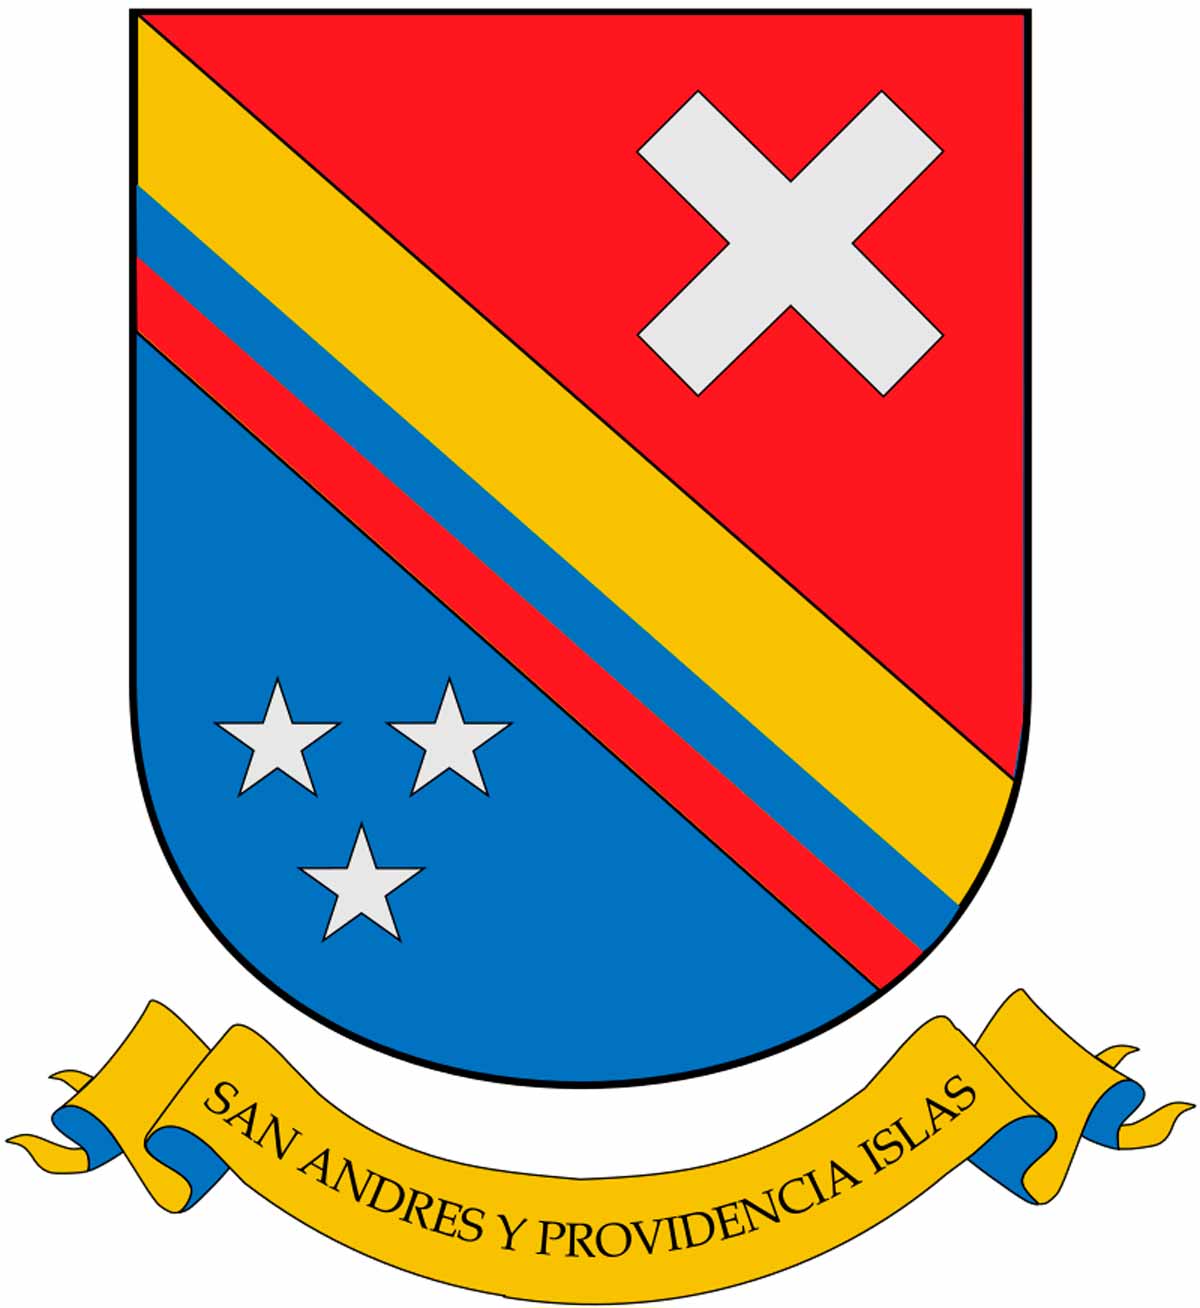 Escudo del Archipiélago San Andrés y Providencia